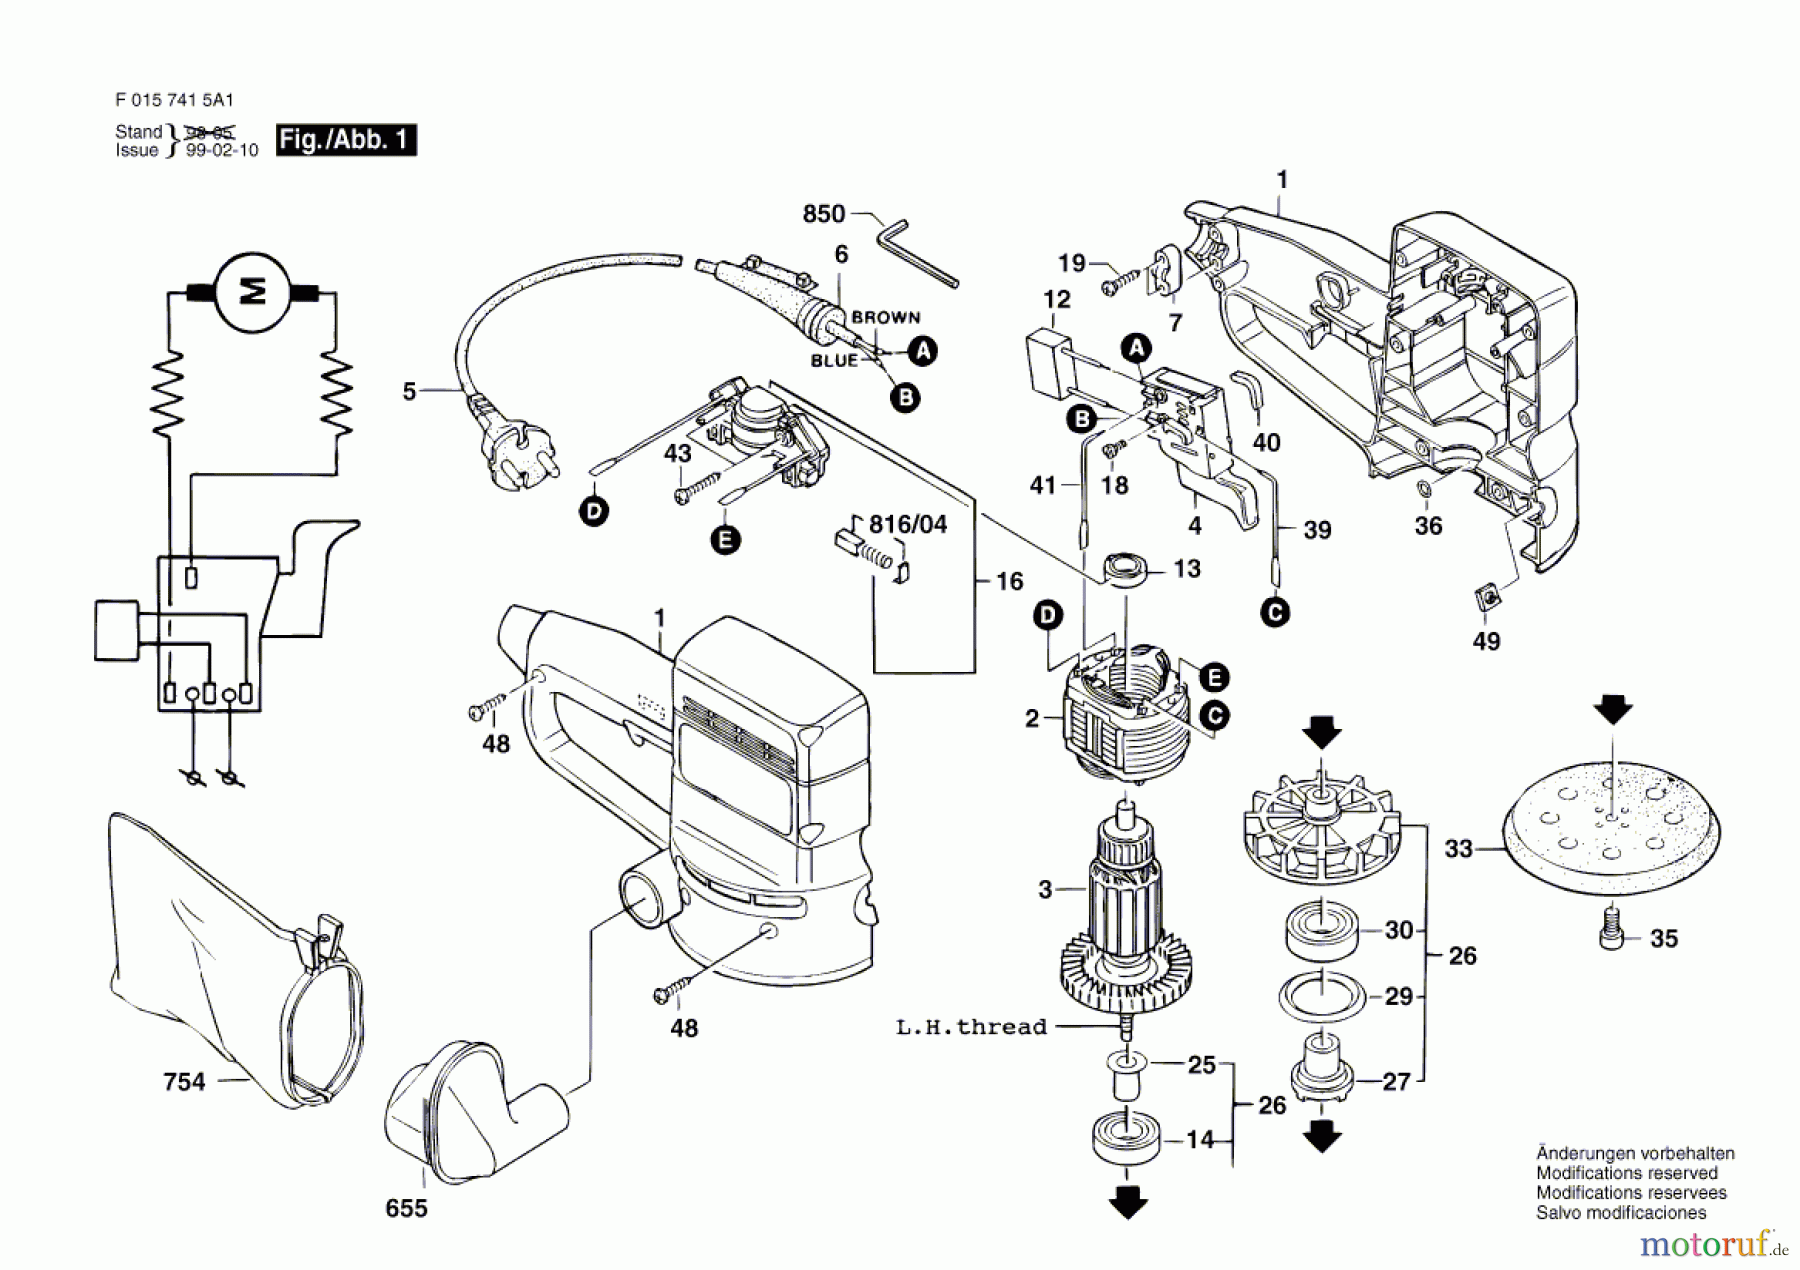  Bosch Werkzeug Hw-Exzenterschleifer 7415 H1 Seite 1